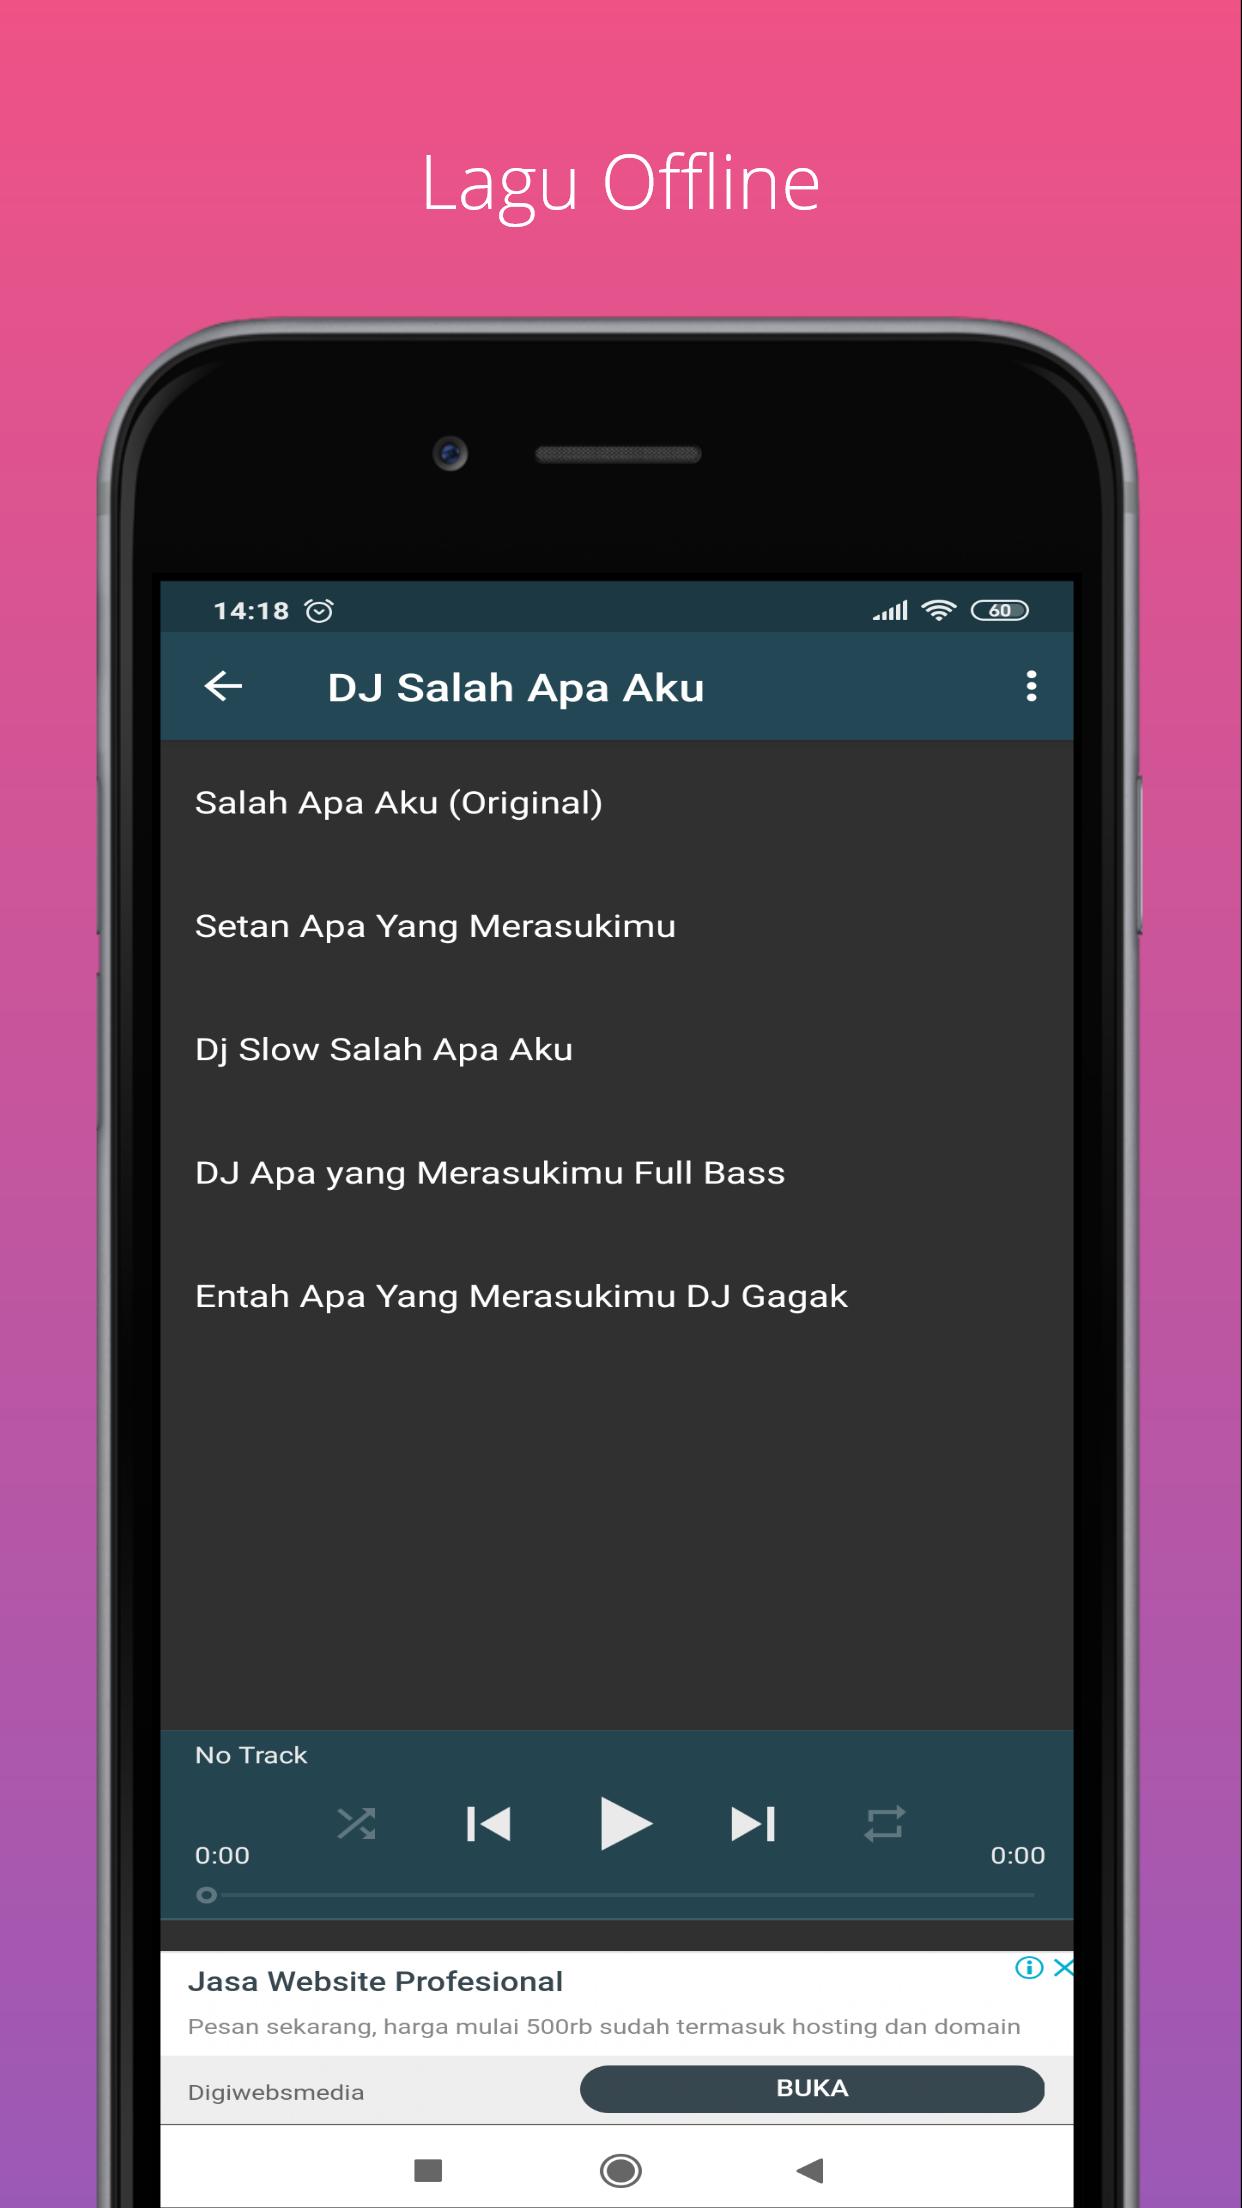 Lagu Entah Apa Yang Merasukimu Vs Gagak For Android Apk Download